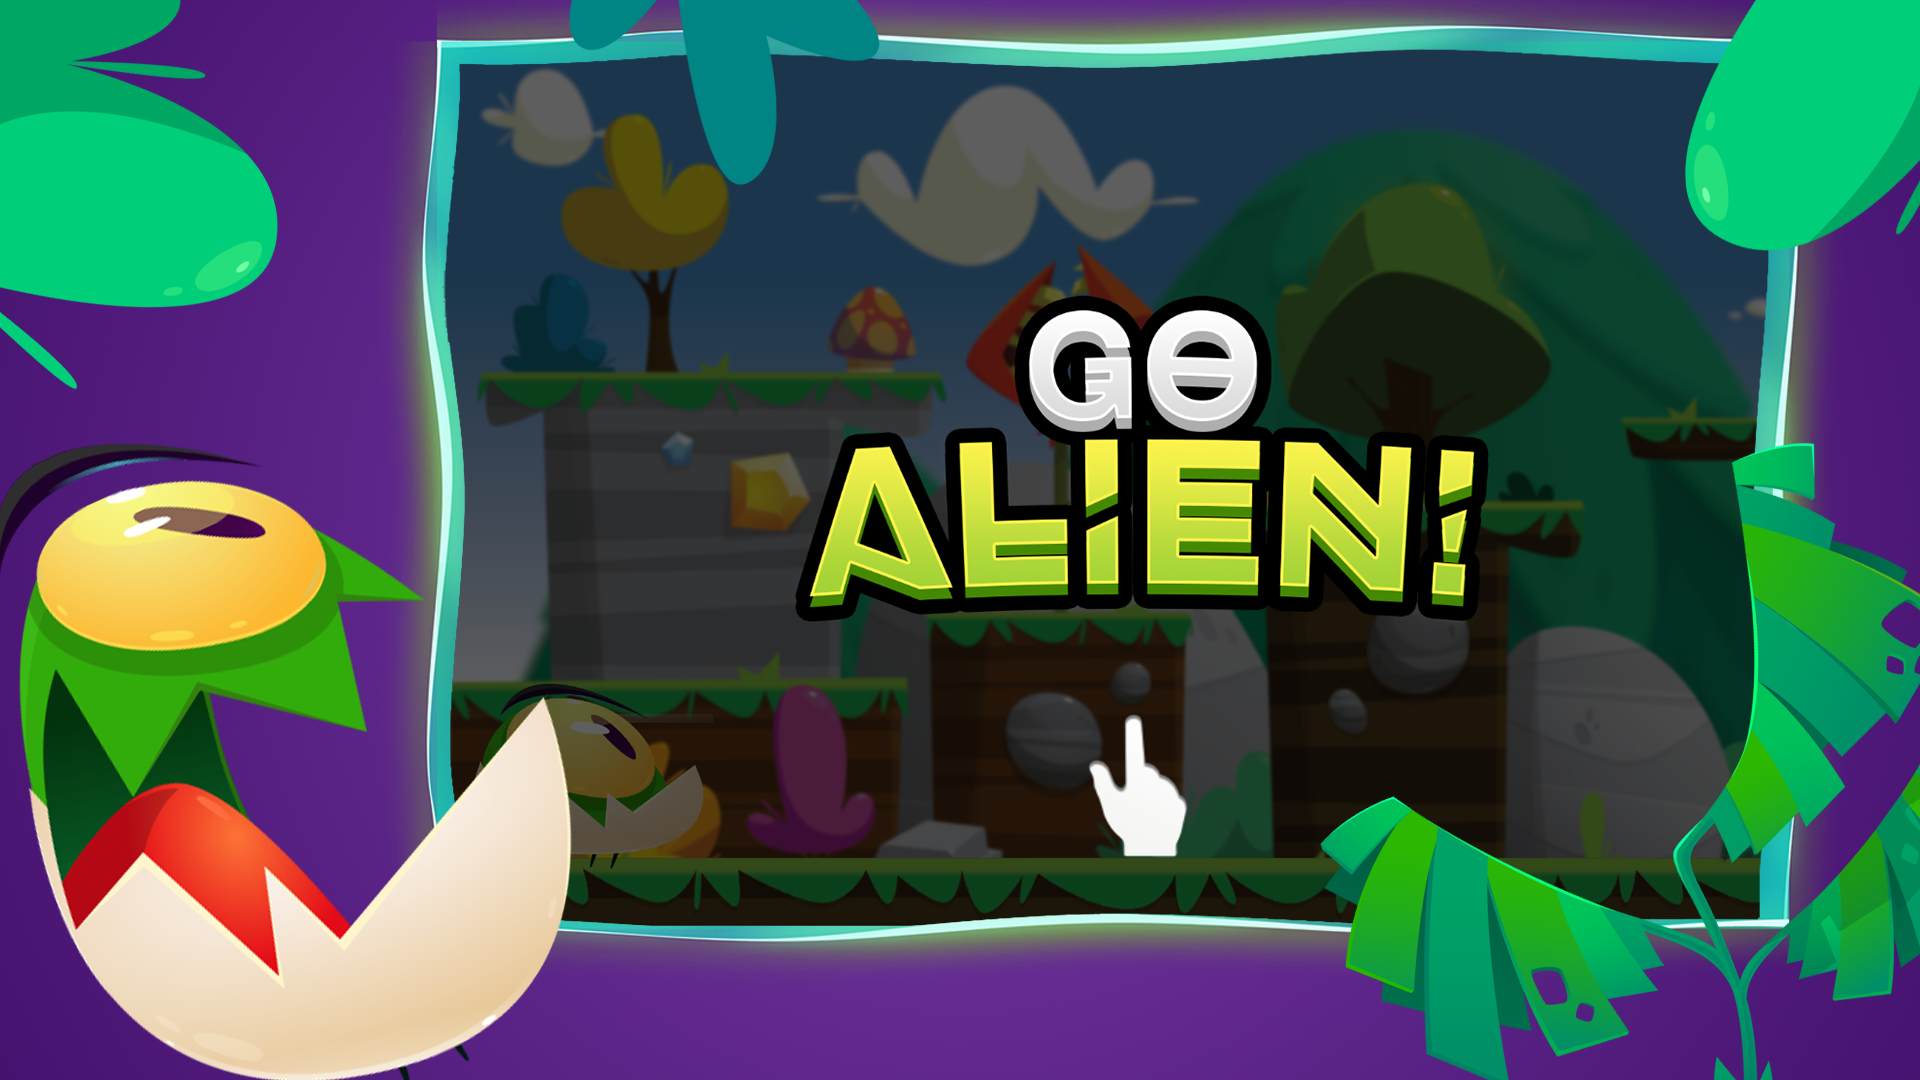 Go Alien!